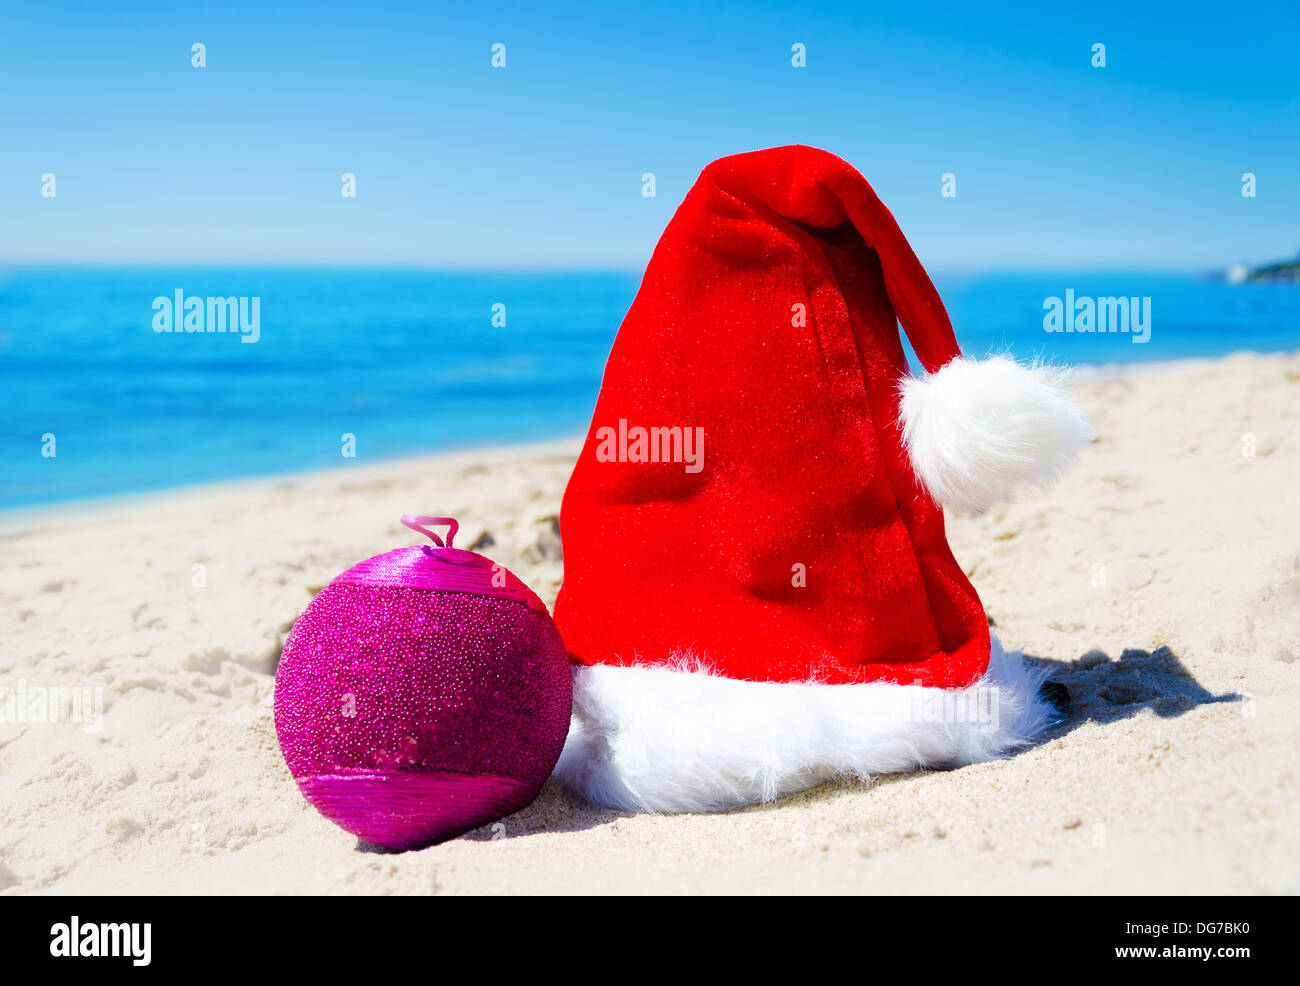 Weihnachtsmütze mit Weihnachtskugel am Strand am Meer - Urlaub-Konzept Stockfoto